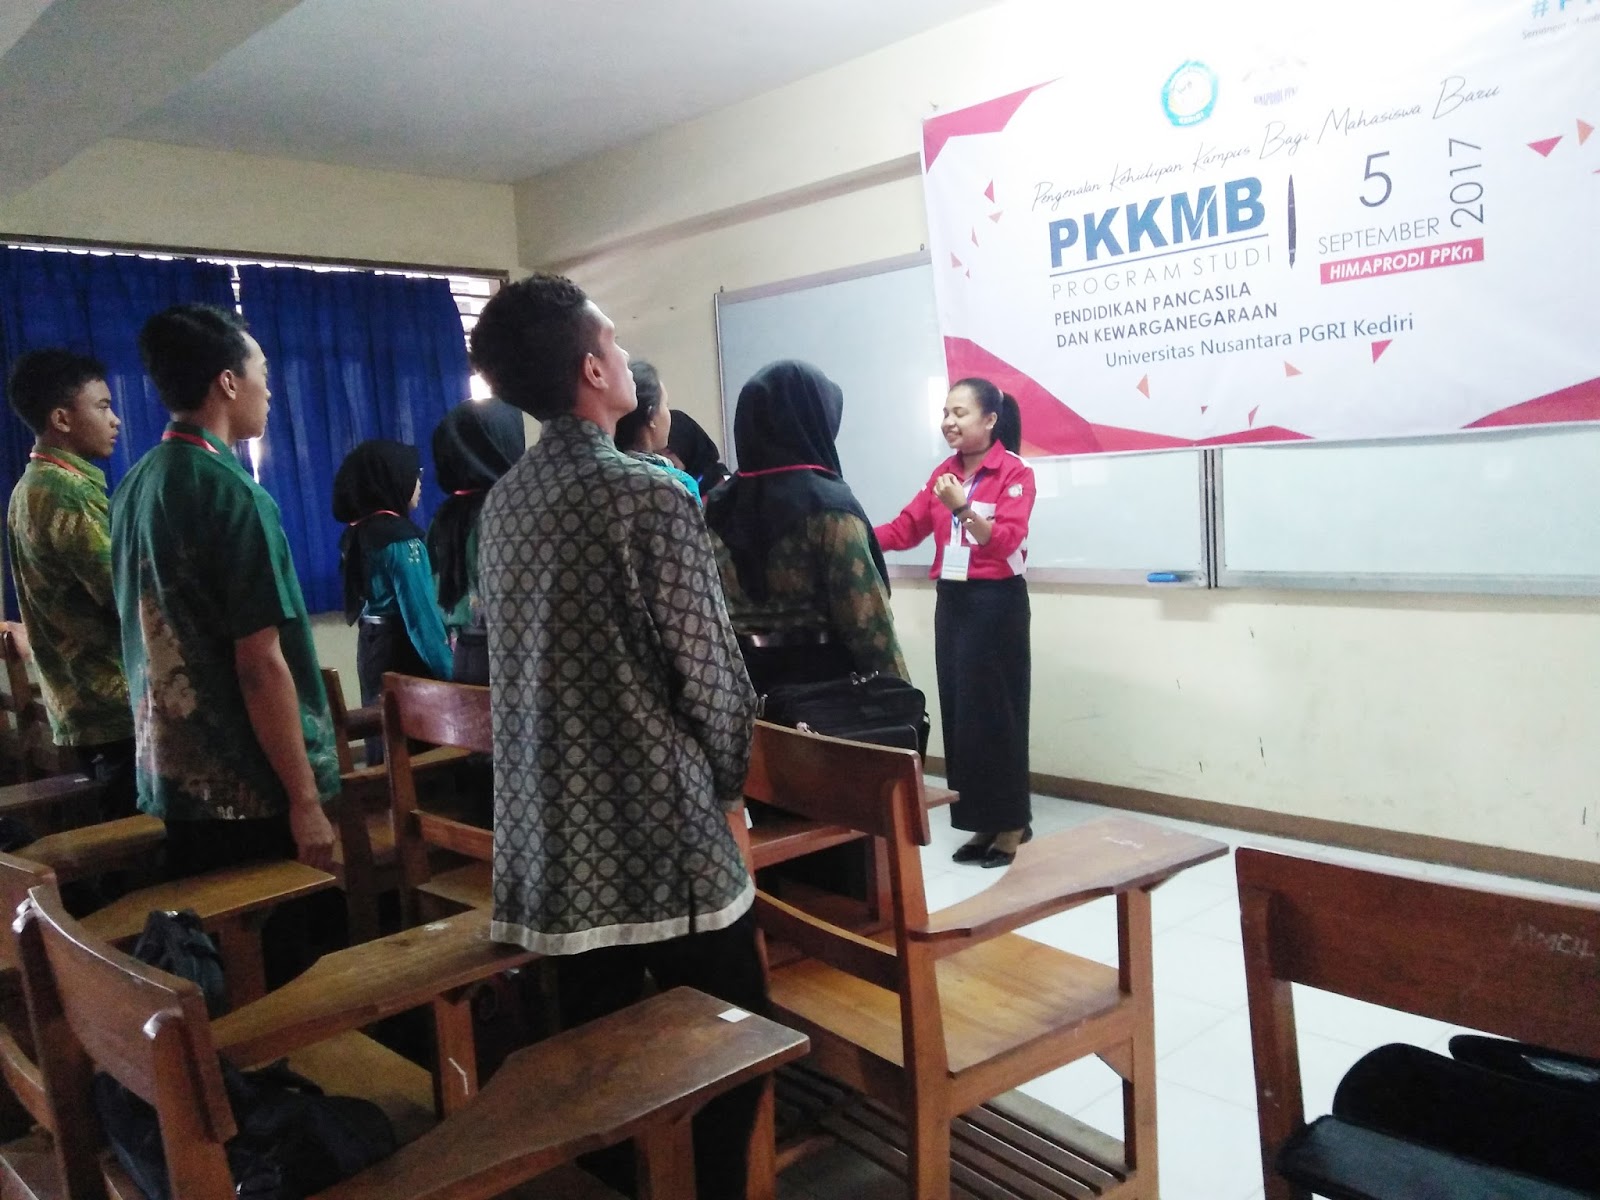 Selasa 05 September 2017 merupakan PKKMB yang diprakarsai oleh Himpunan Mahasiswa yang ada dilingkup Kampus Universitas Nusantara PGRI Kediri